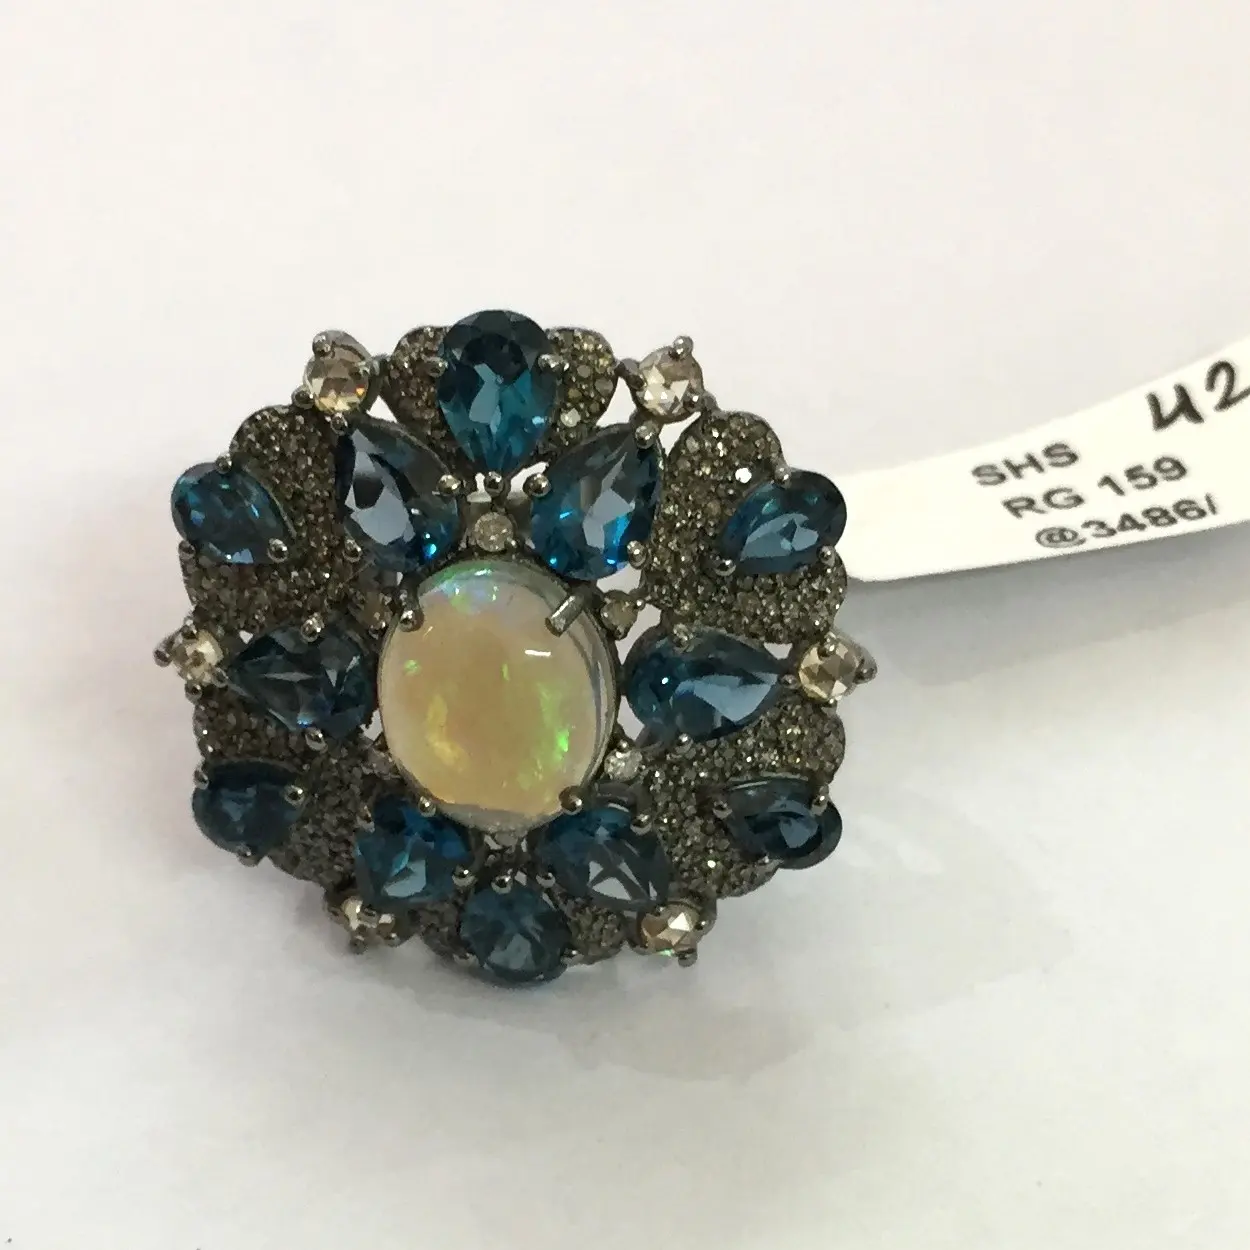 Real London Blue Topaz Opal Gemstone Female Beautiful Ring in argento 925 con finitura anticata gioielli con anello placcato rodio nero